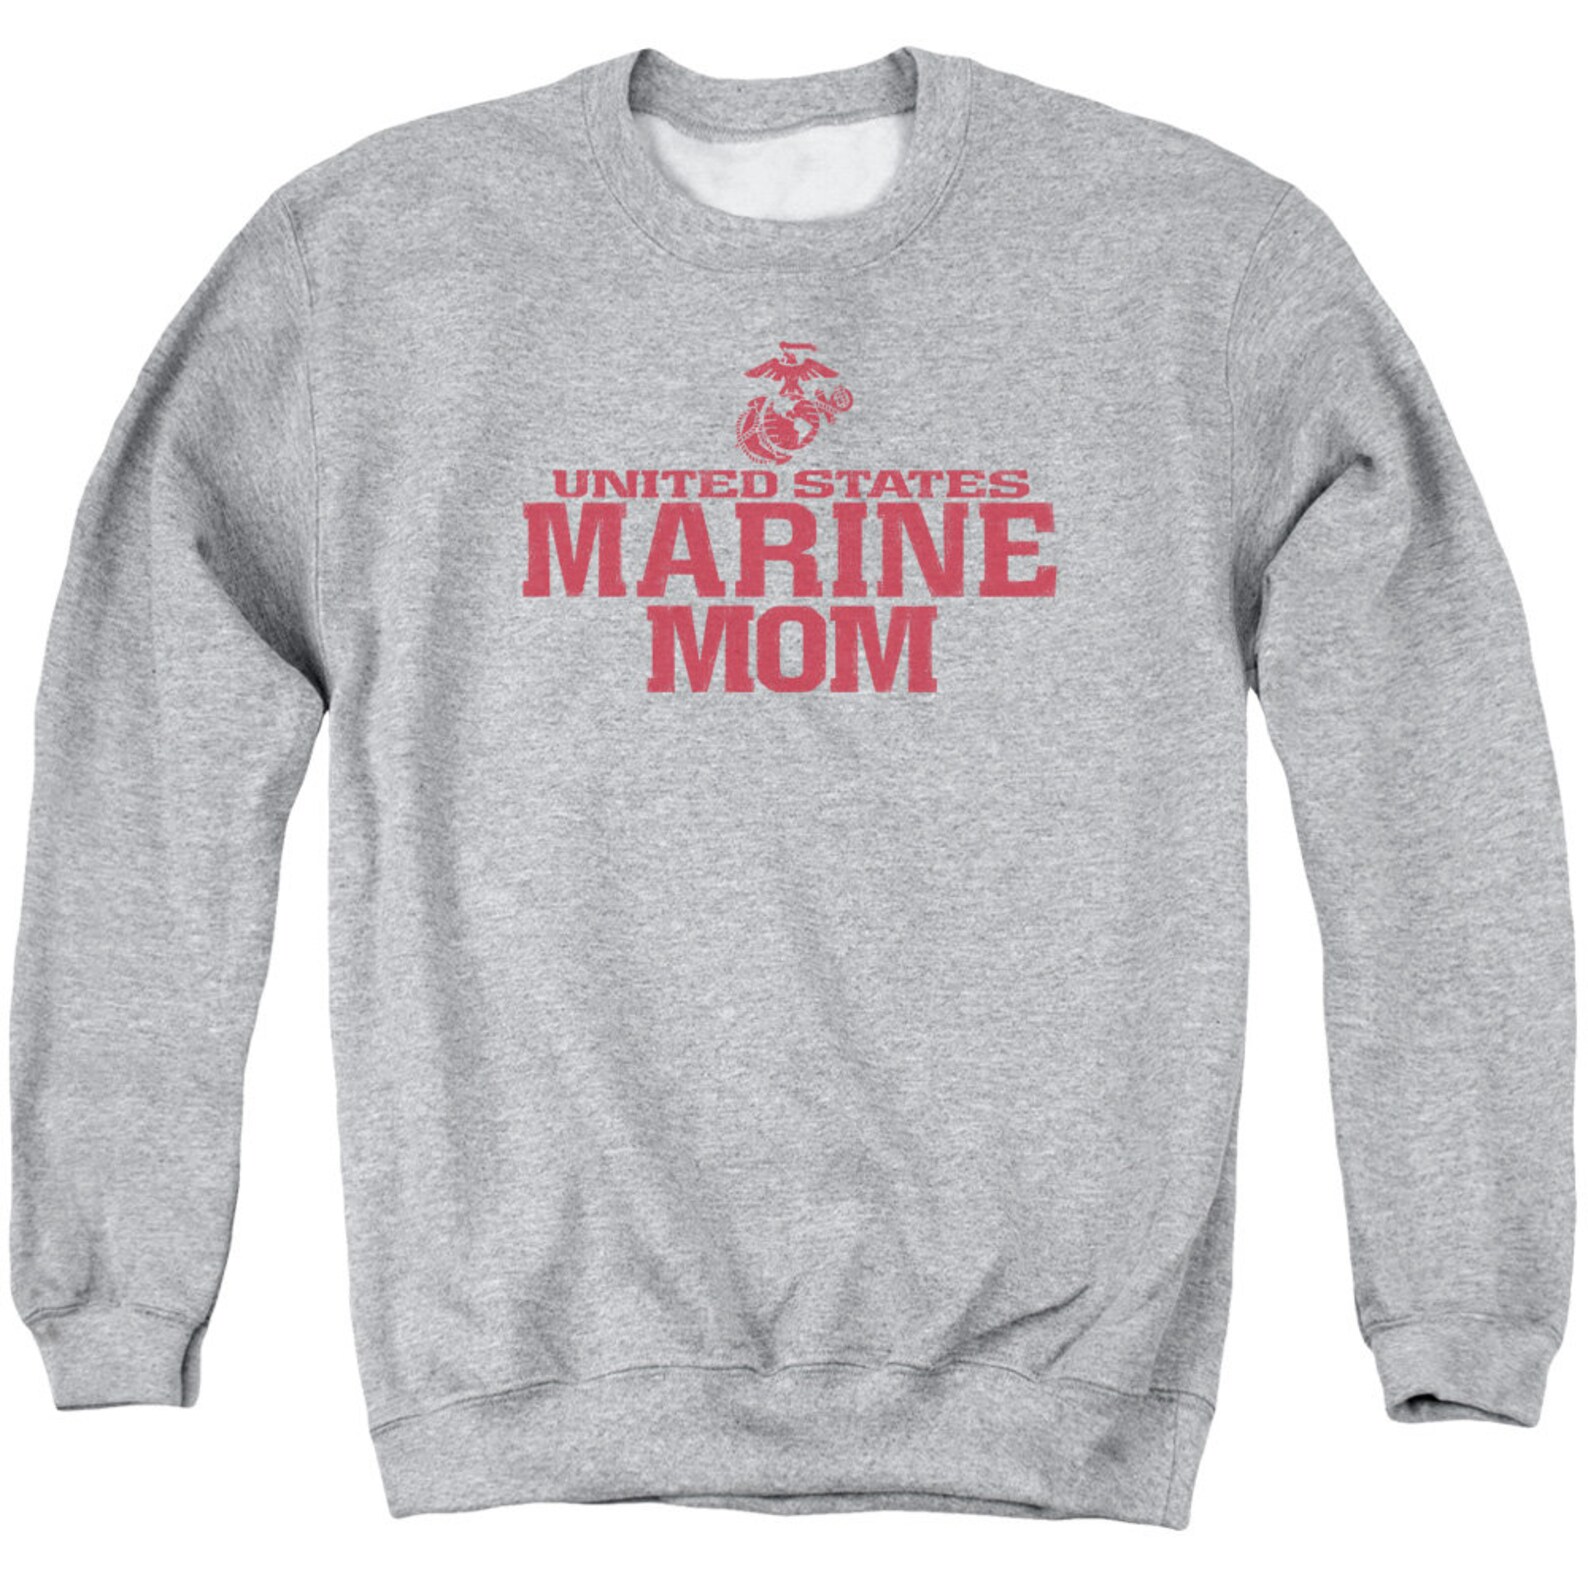 U.S. Marine Corps Marine Mom Athletic Heather Shirts | Etsy